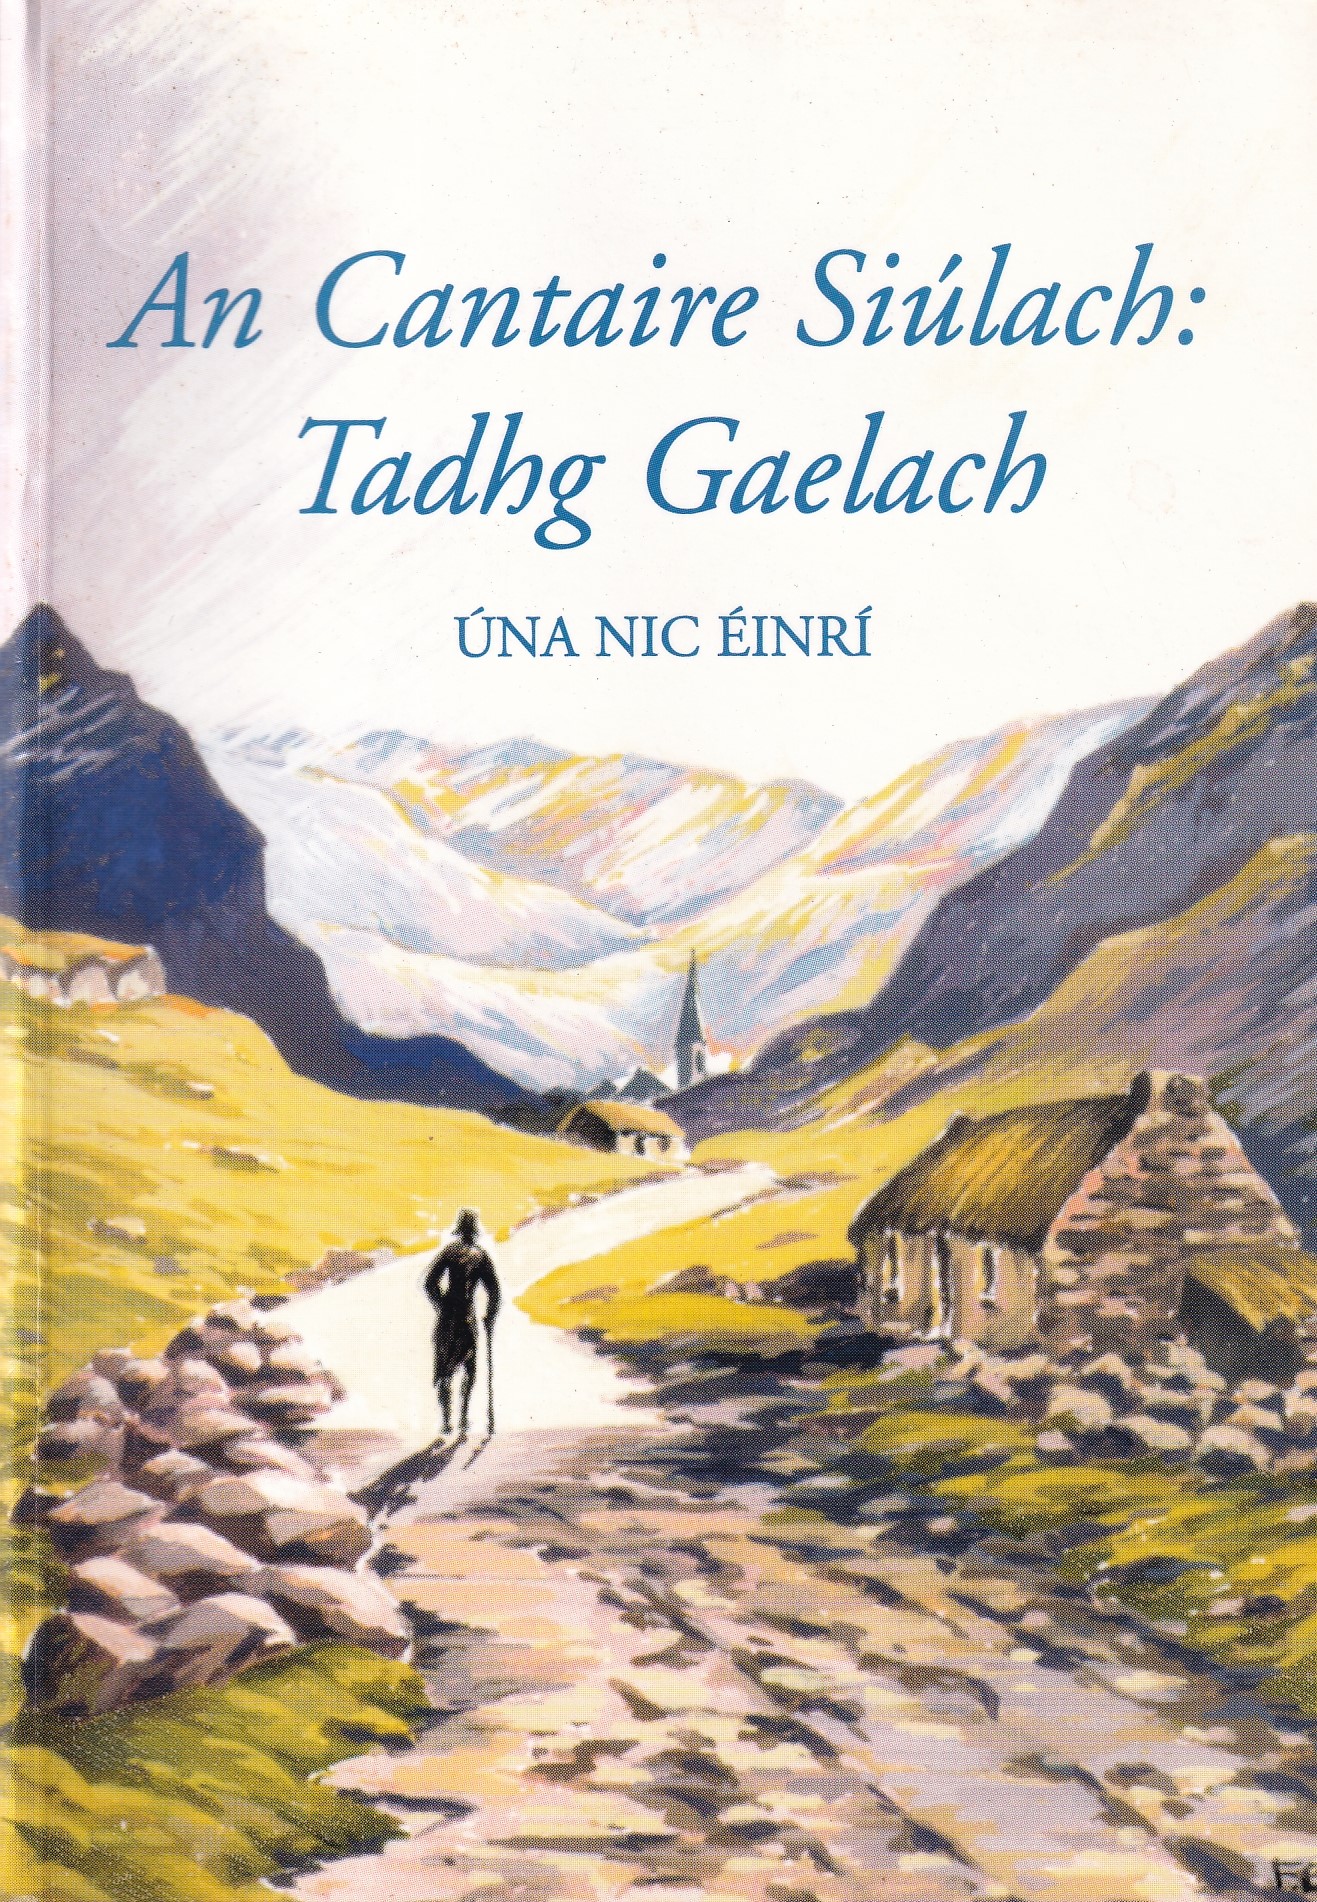 An Cantaire Siulach: Tadhg Gaelach (Irish Edition) by Una Nic Einri